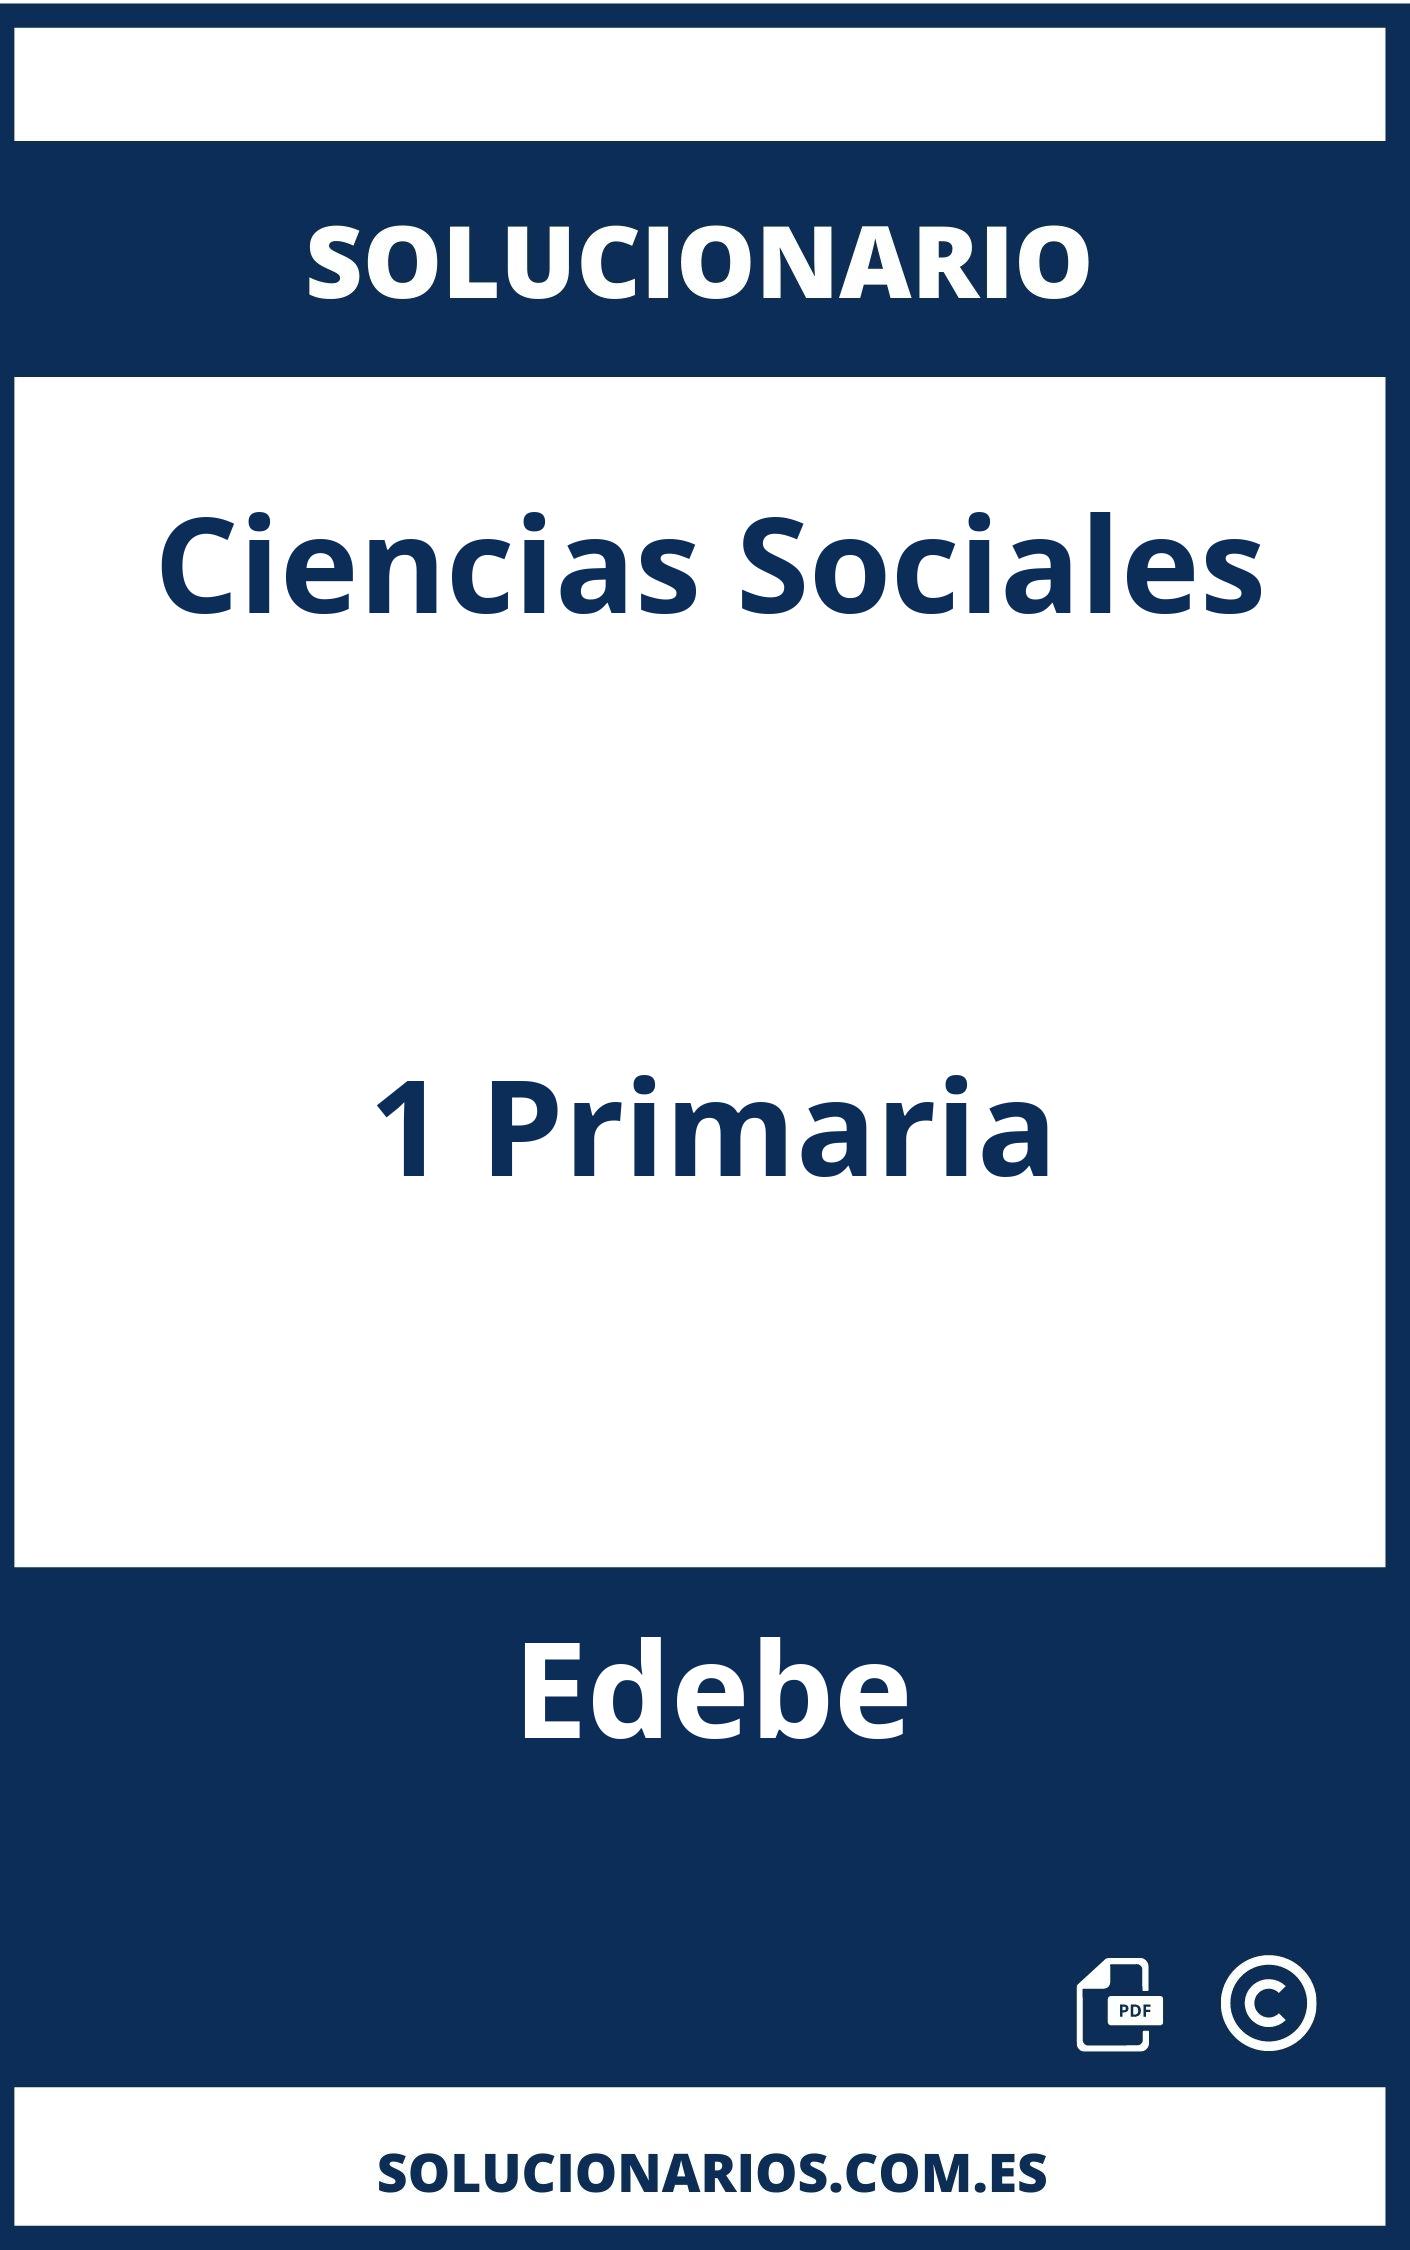 Solucionario Ciencias Sociales 1 Primaria Edebe